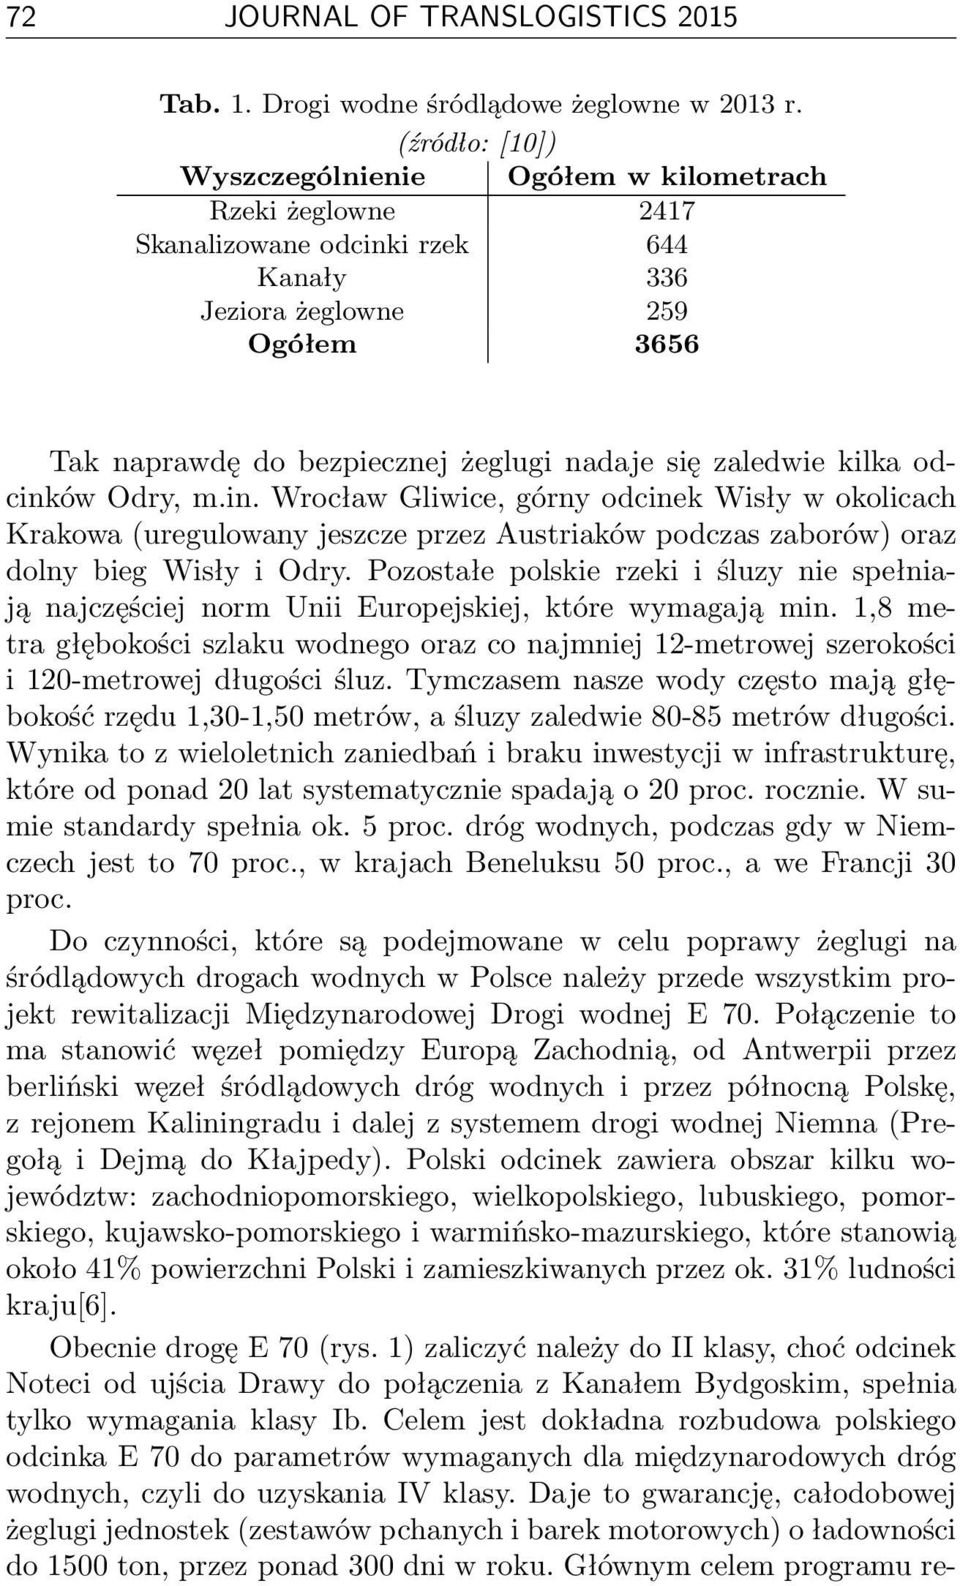 zaledwie kilka odcinków Odry, m.in. Wrocław Gliwice, górny odcinek Wisły w okolicach Krakowa (uregulowany jeszcze przez Austriaków podczas zaborów) oraz dolny bieg Wisły i Odry.